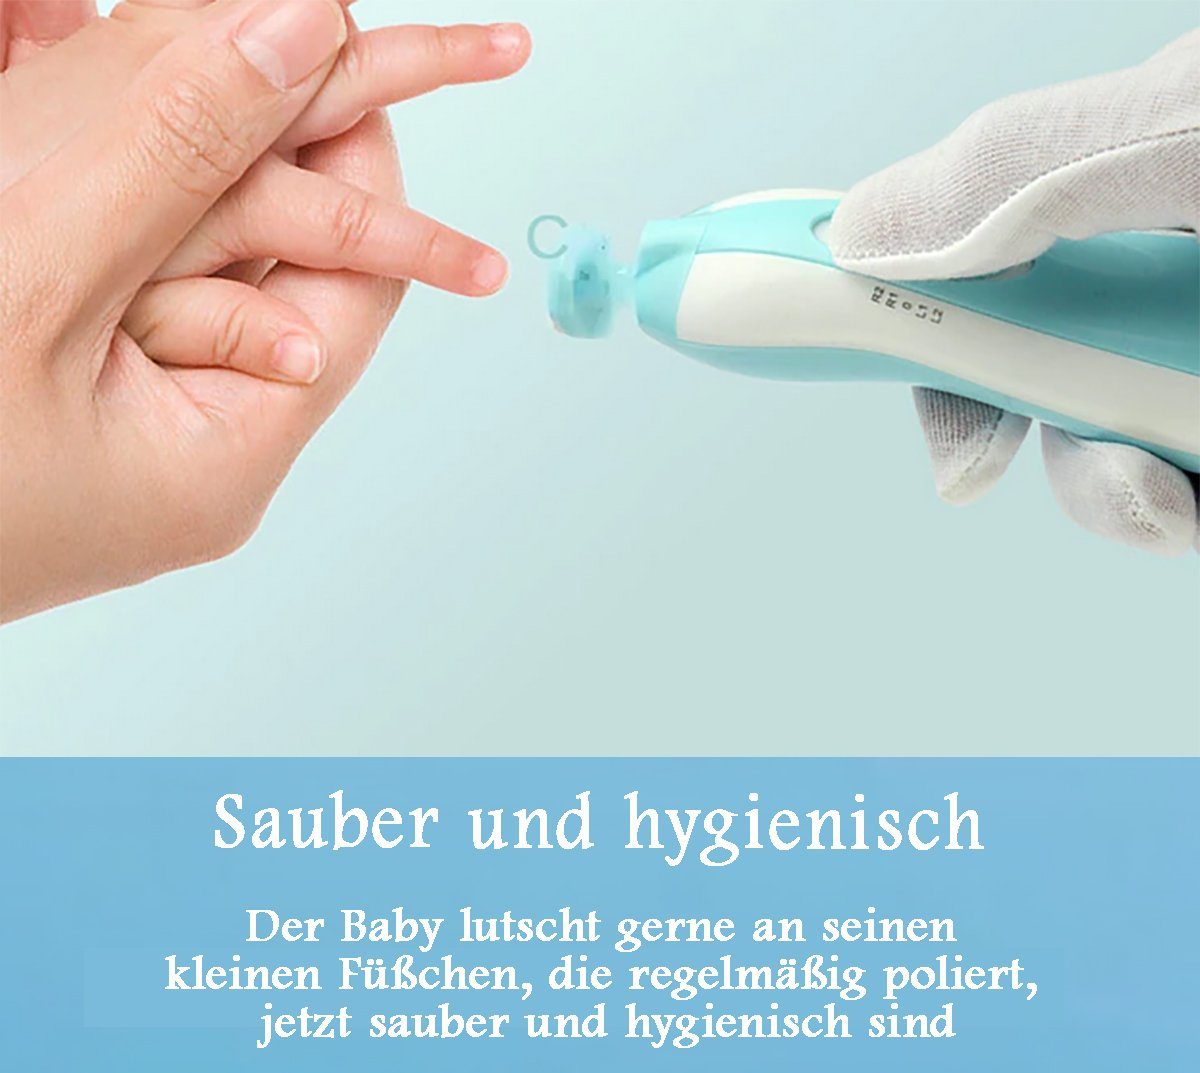 Babypflege-Set Akku Sicherer 1 Säuglinge Baby-Nagelschneider, Baby für Pediküreset Kleinkinder - Blau Nagelfeile Elektrisch Elektrische mit TPFBeauty tlg., und